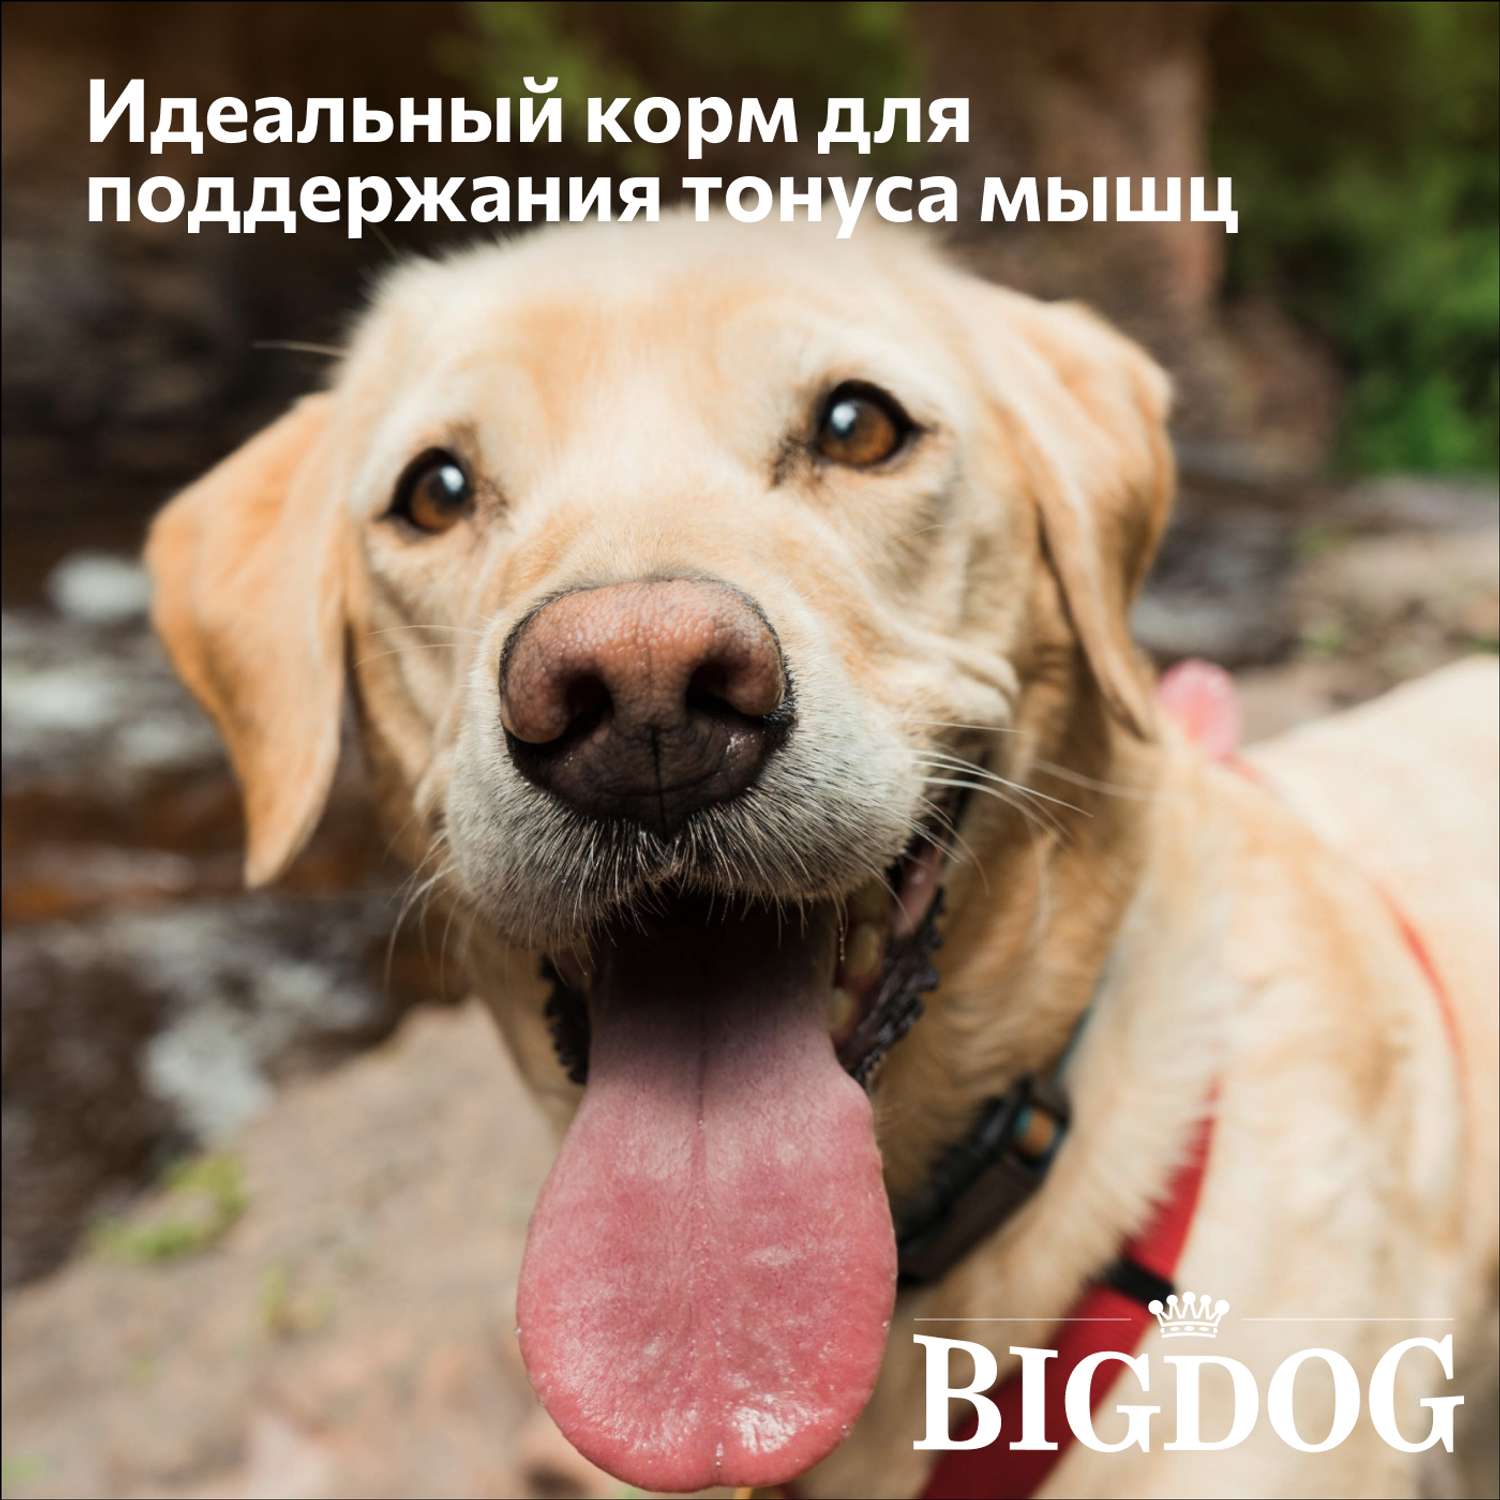 Корм сухой Зоогурман полнорационный для взрослых собак средних и крупных пород Big dog Птица MIX 5 кг - фото 2